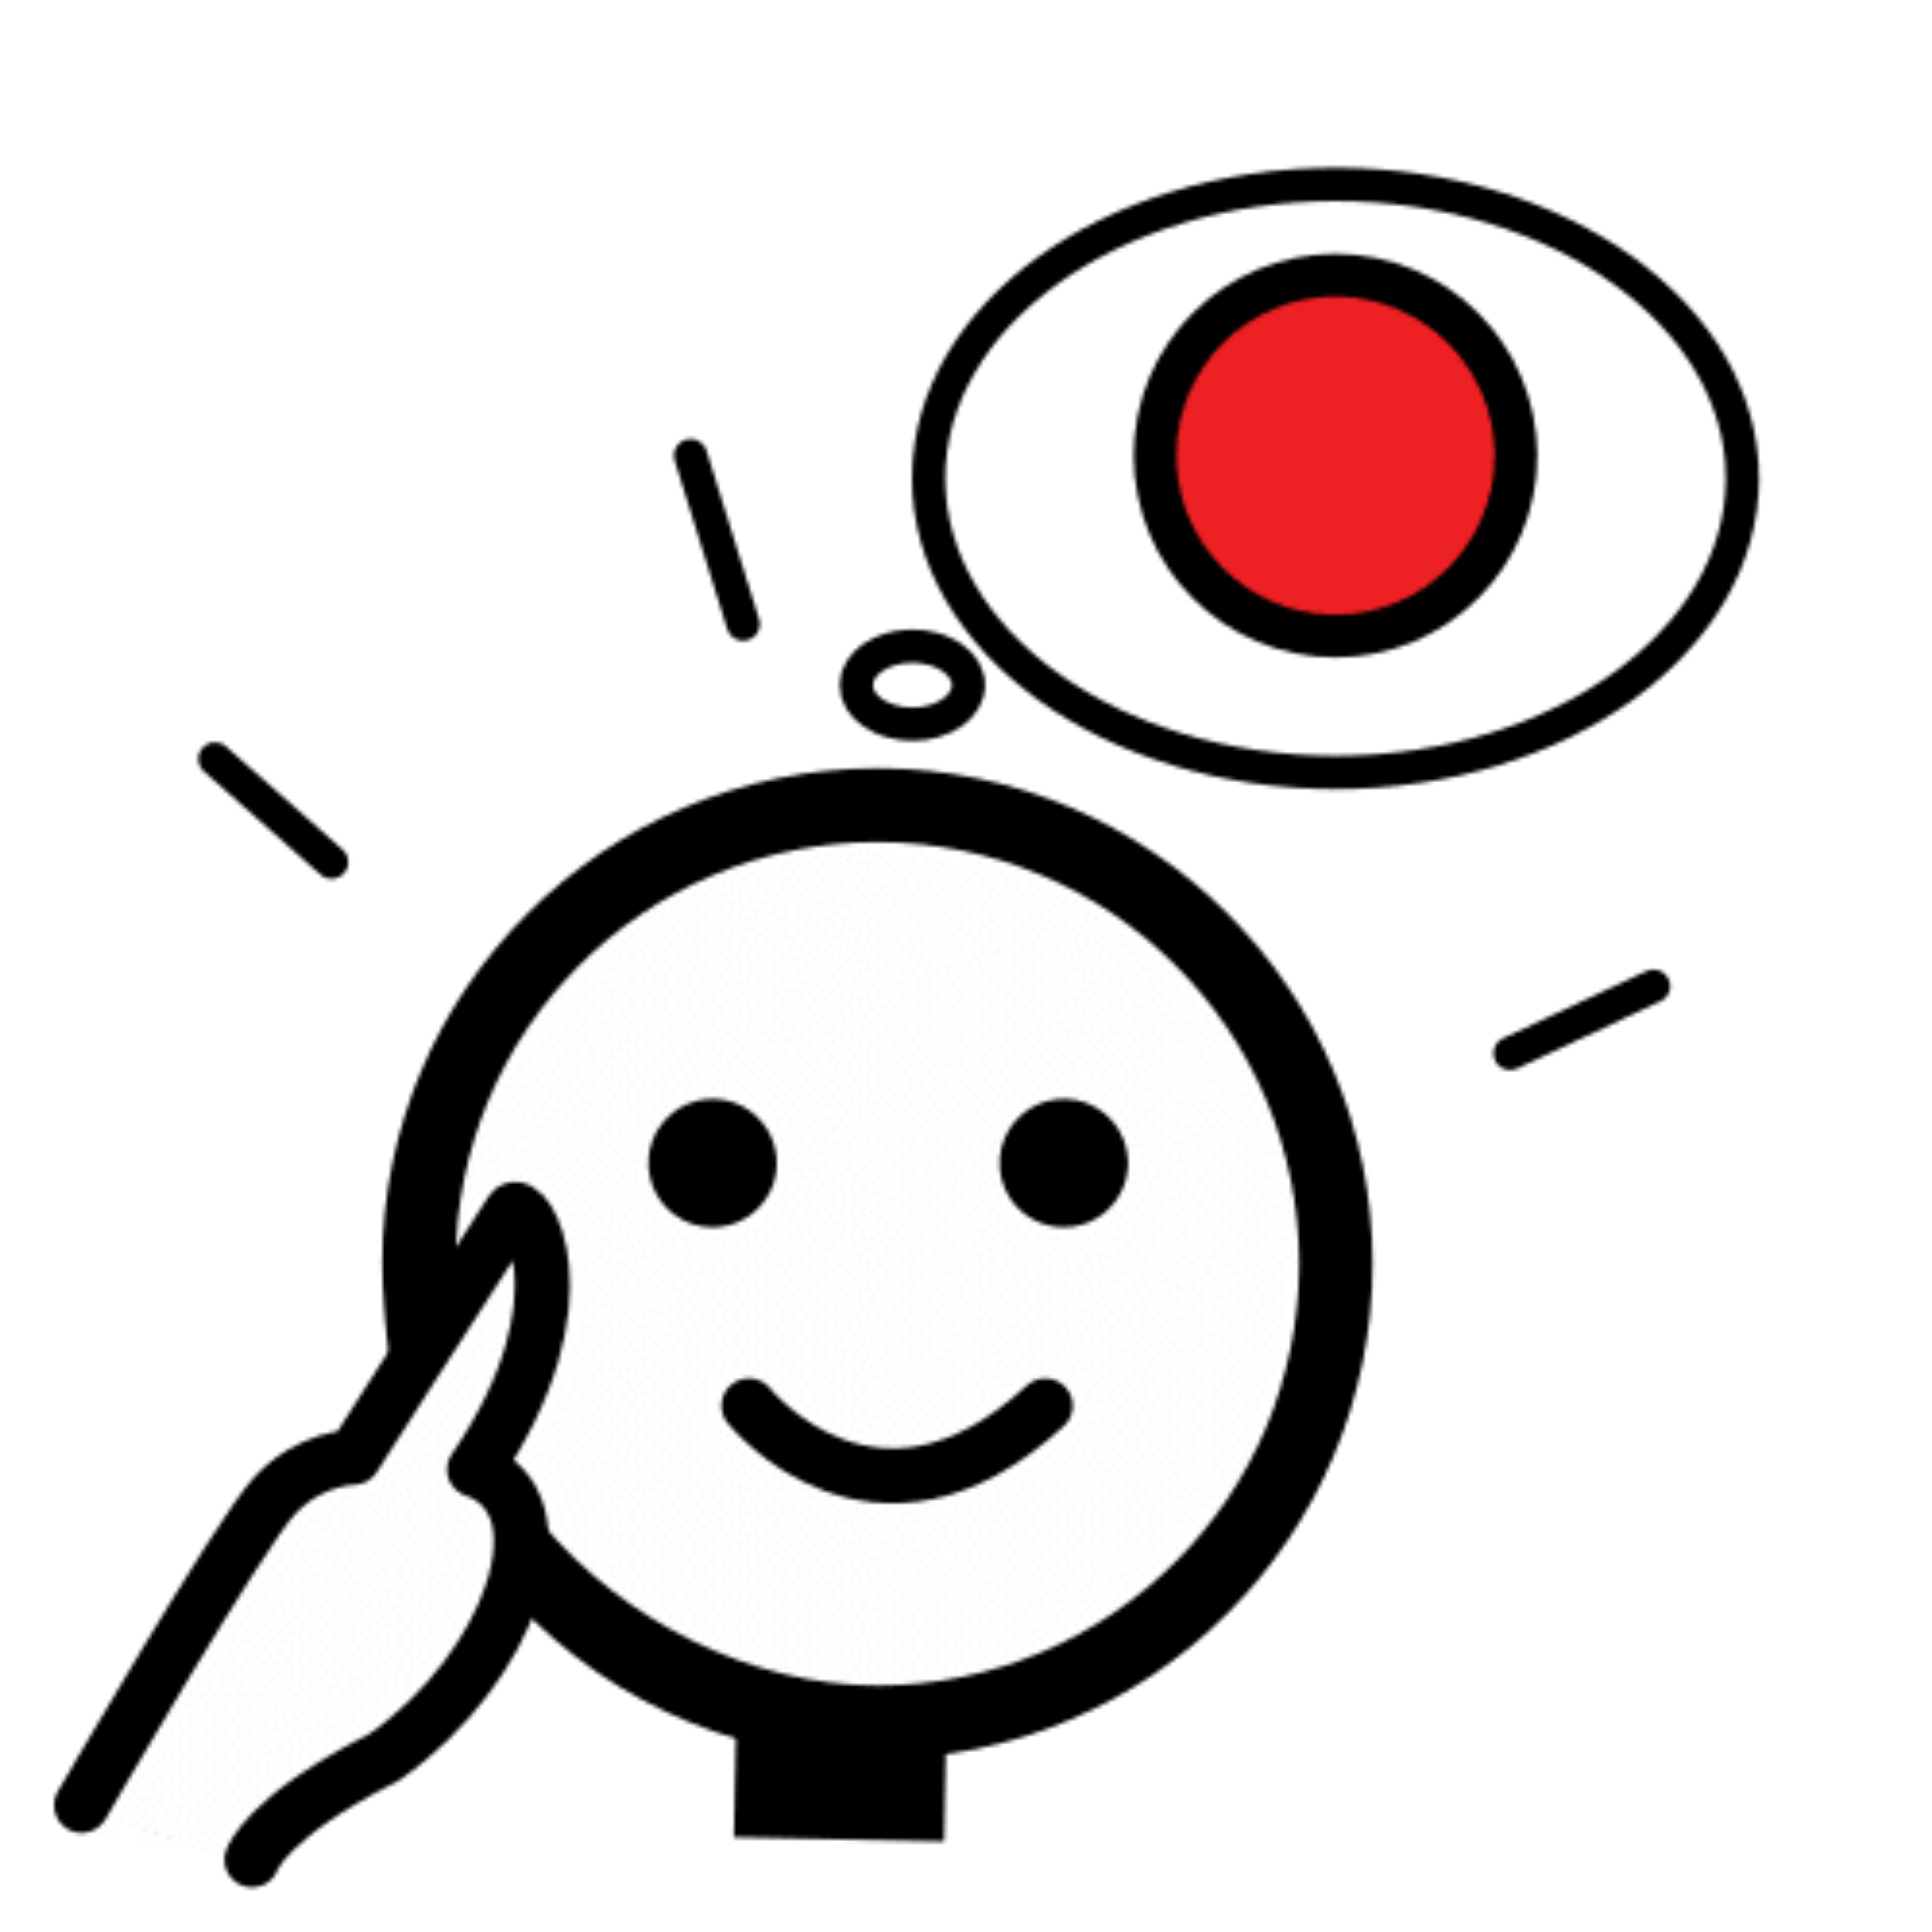 La imagen muestra a un personaje con un bocadillo sobre la cabeza, y dentro del bocadillo un punto rojo